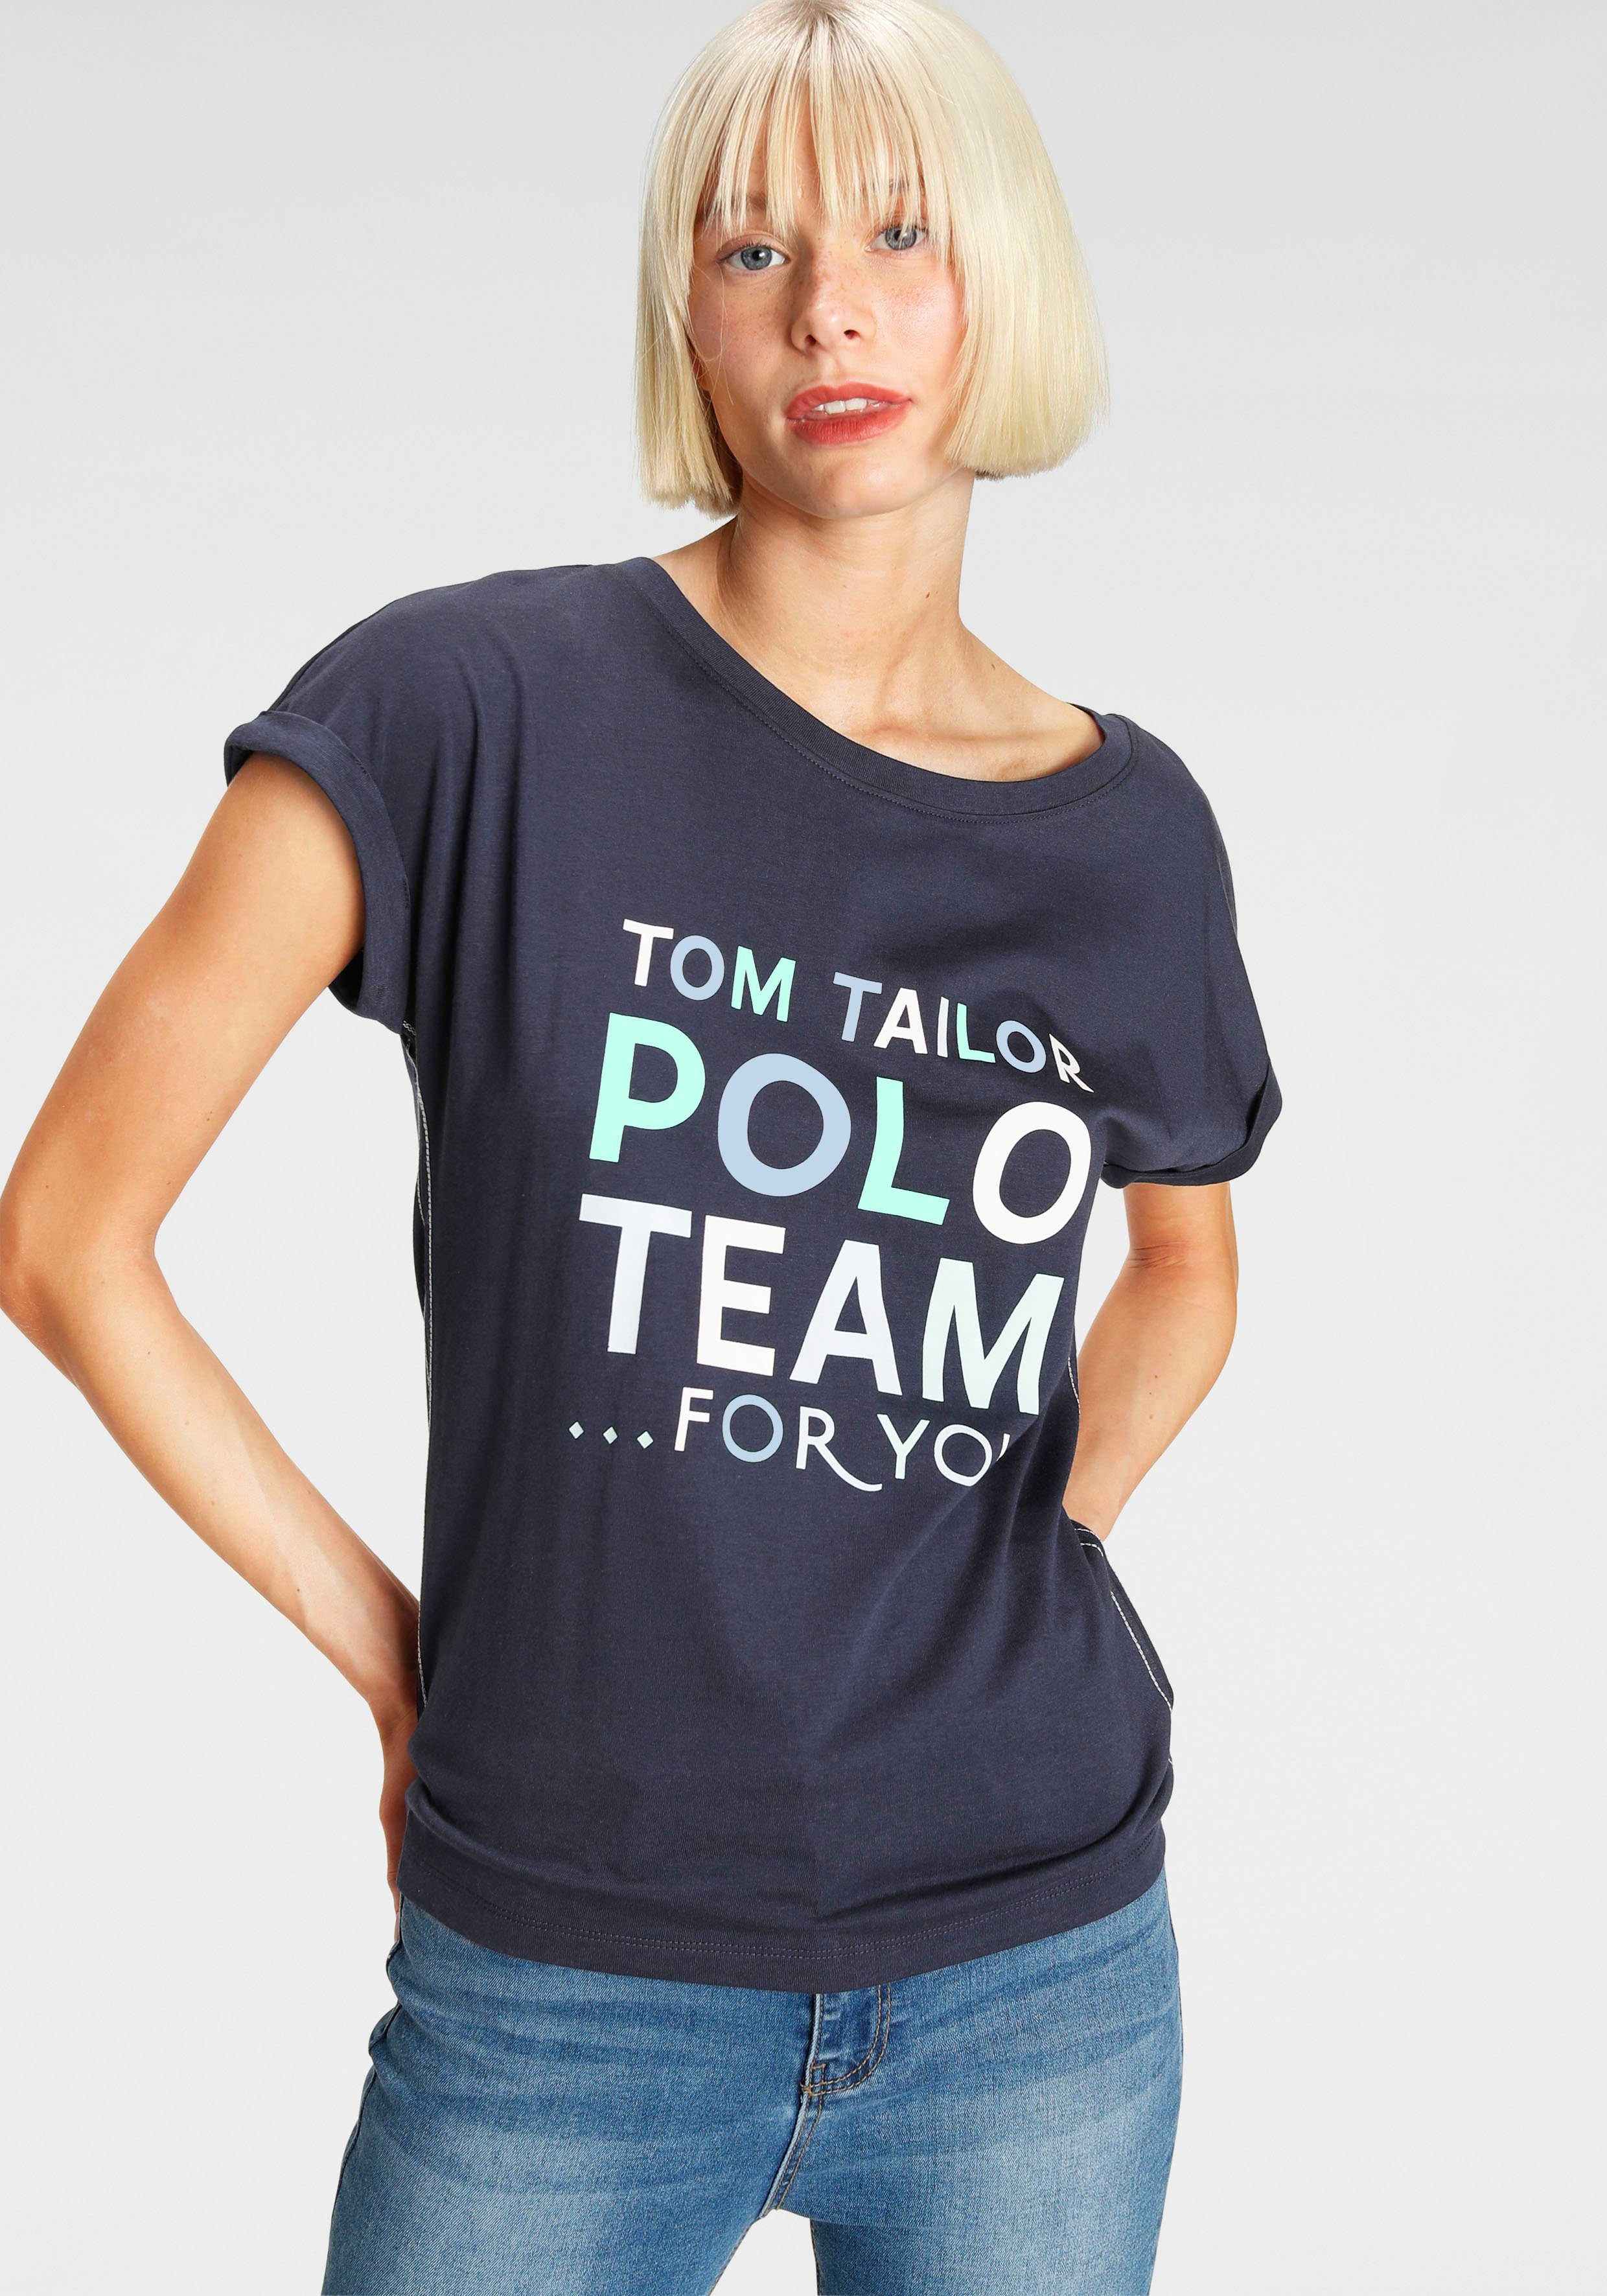 TOM TAILOR Polo Team großem Print-Shirt farbenfrohen Logo-Print